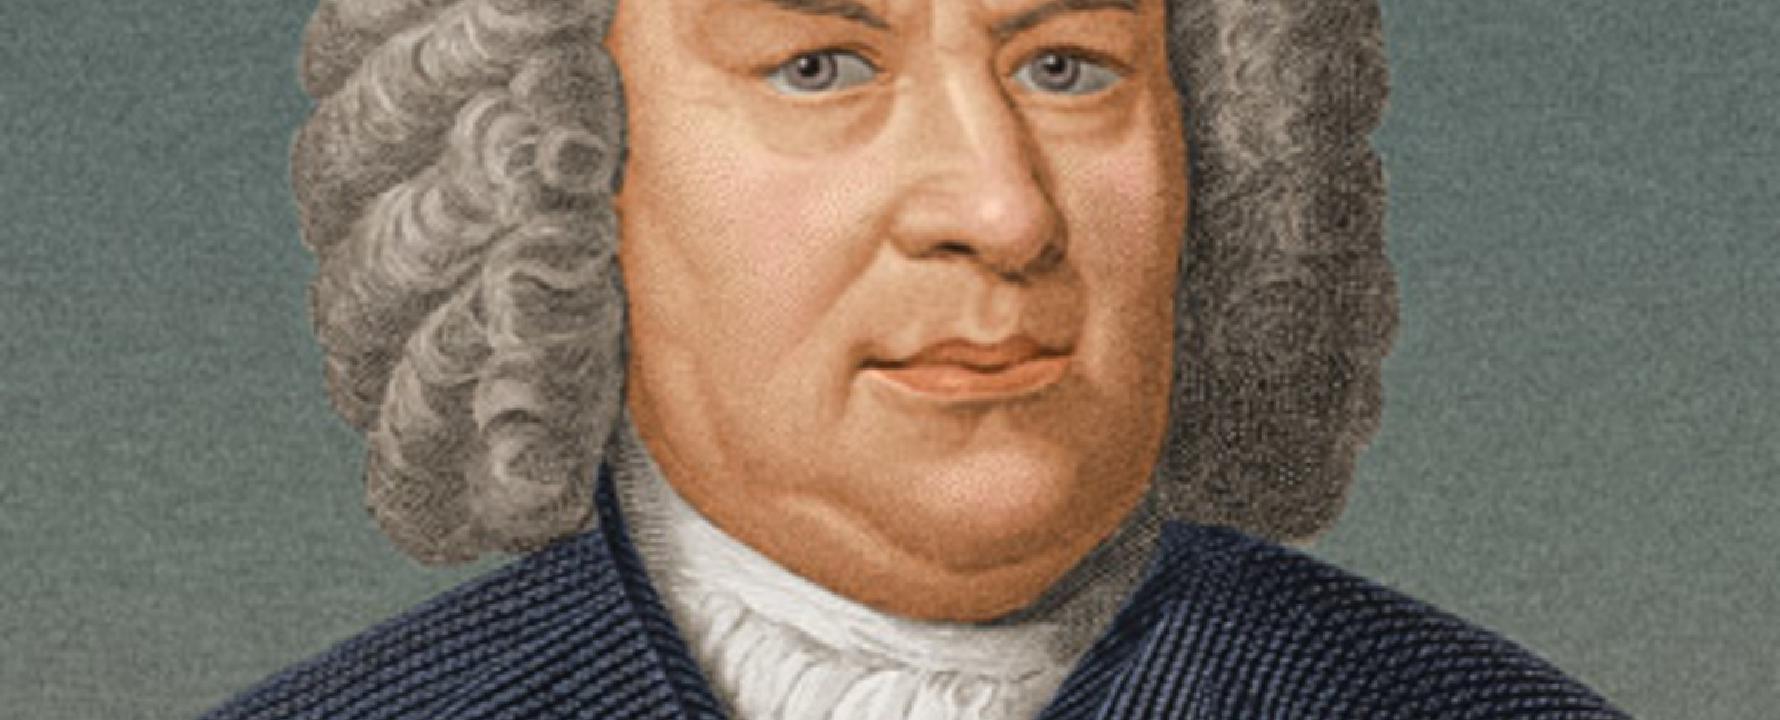 Fotografía promocional de Johann Sebastian Bach